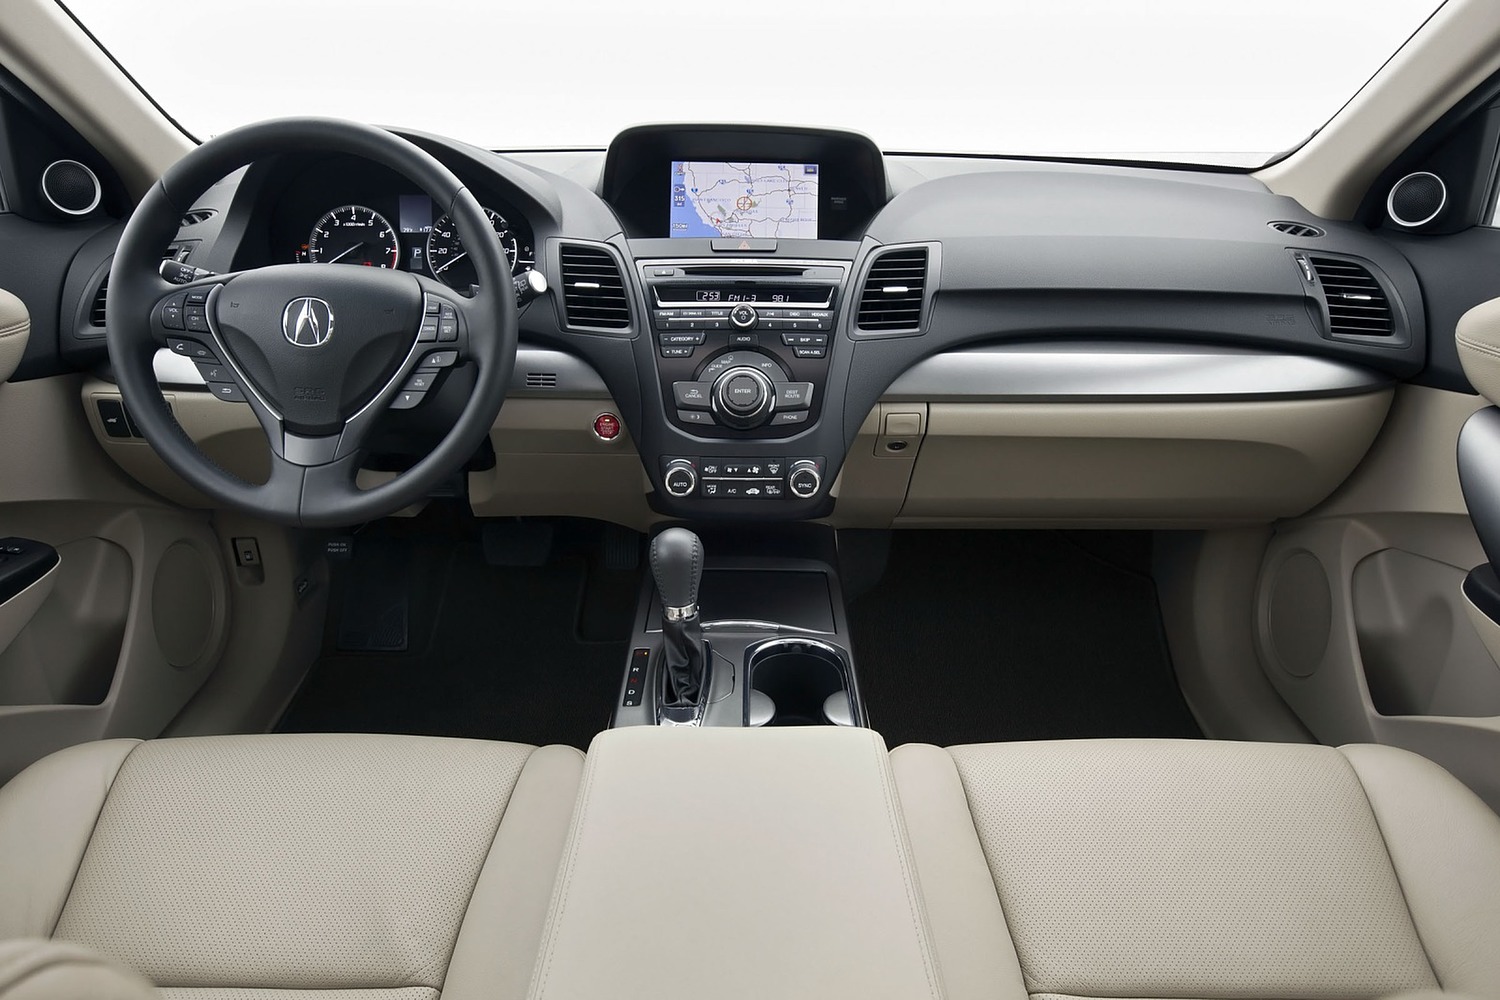 Acura RDX 4dr SUV Dashboard (2014 model year shown)